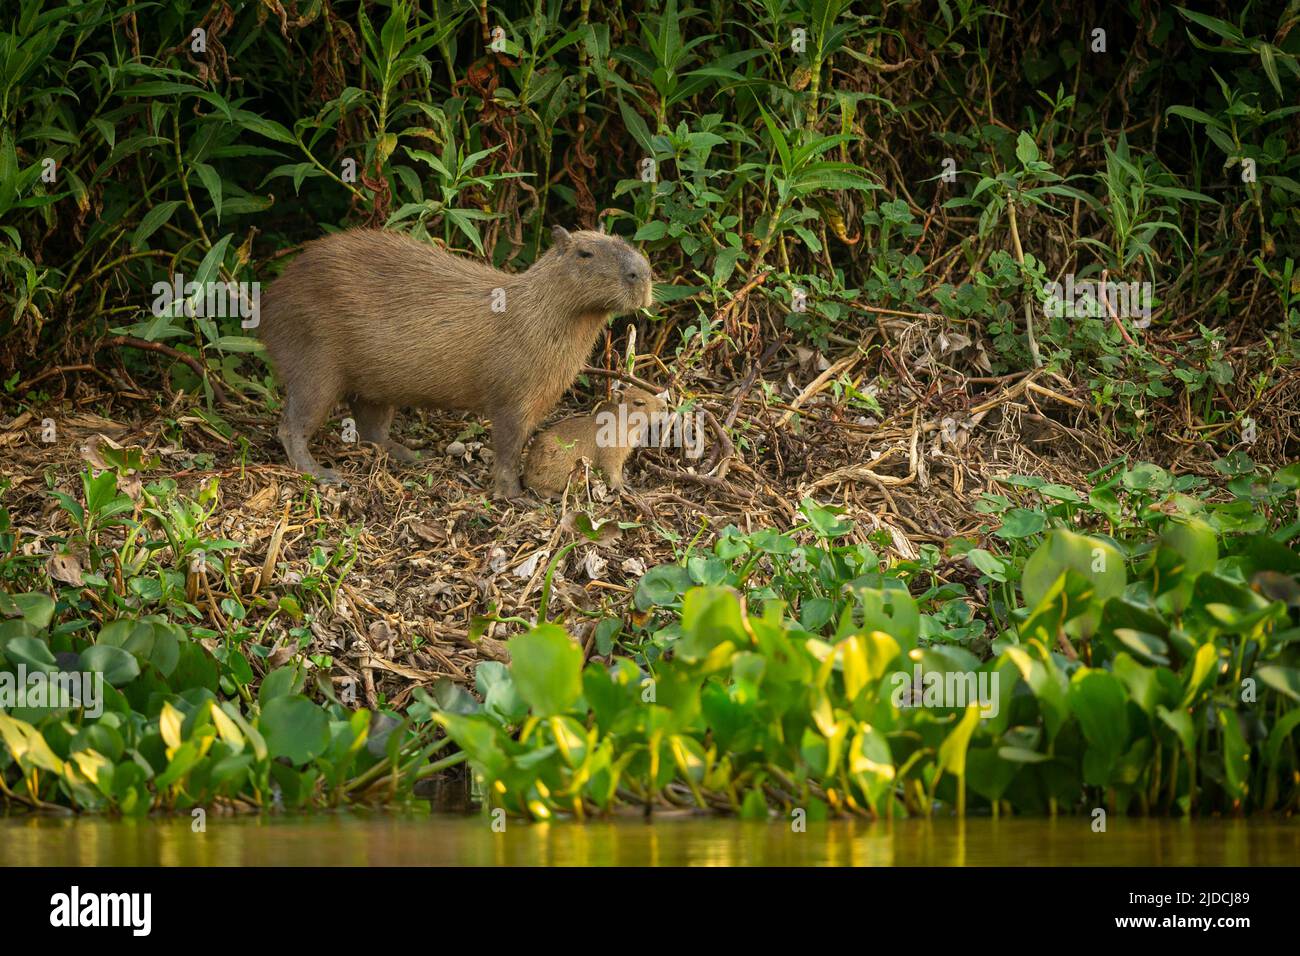 Capybara nell'habitat naturale del pantanal settentrionale. Il più grande roditore, l'america selvaggia, la fauna selvatica dell'america del sud. Foto Stock